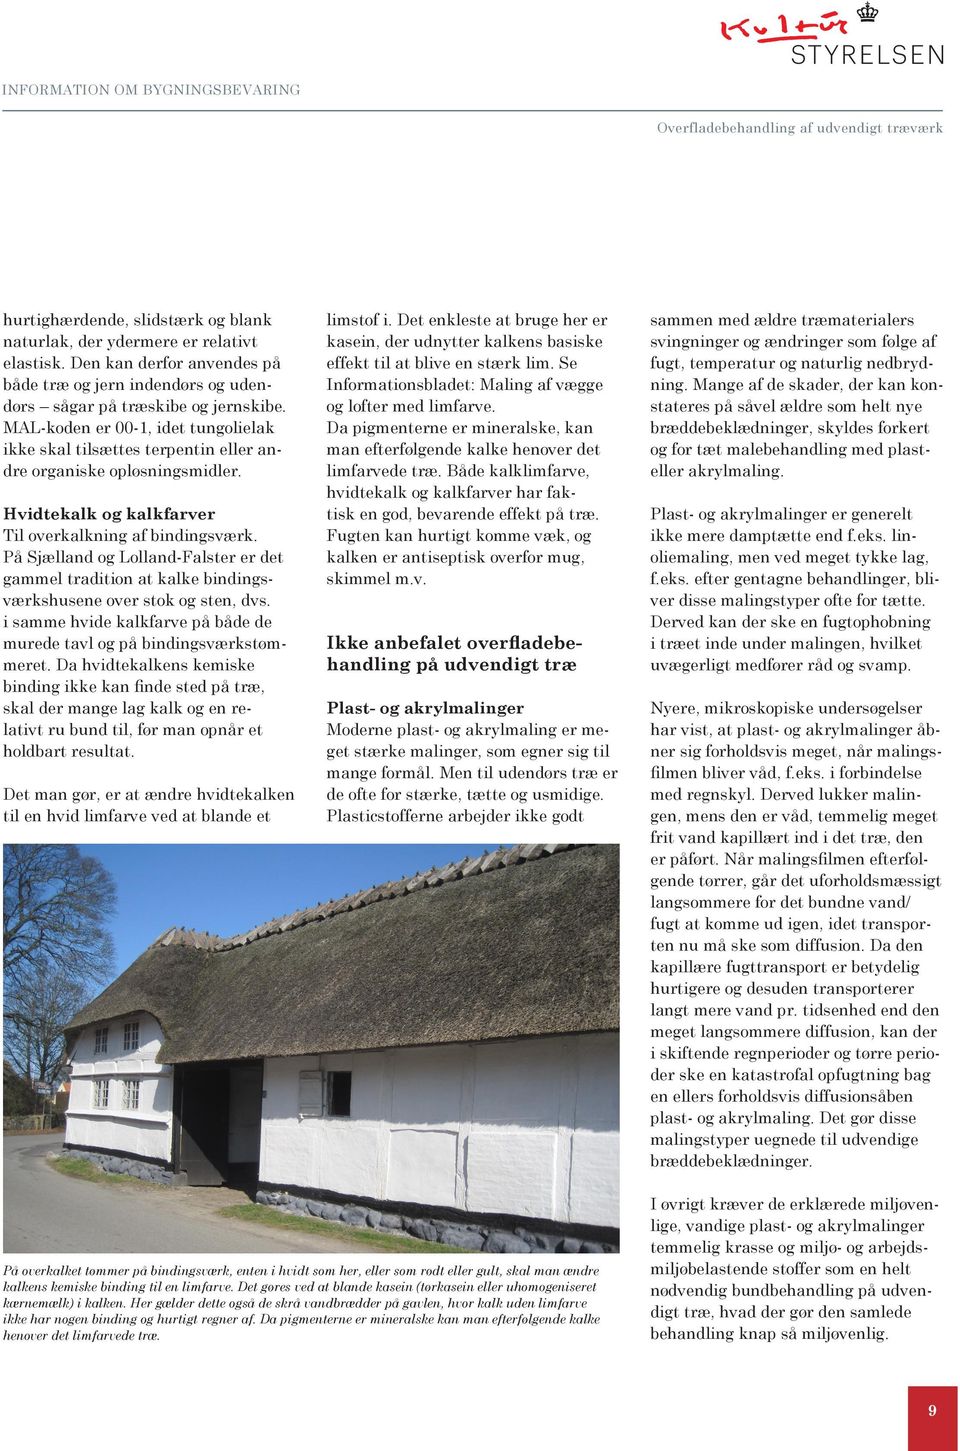 På Sjælland og Lolland-Falster er det gammel tradition at kalke bindingsværkshusene over stok og sten, dvs. i samme hvide kalkfarve på både de murede tavl og på bindingsværkstømmeret.